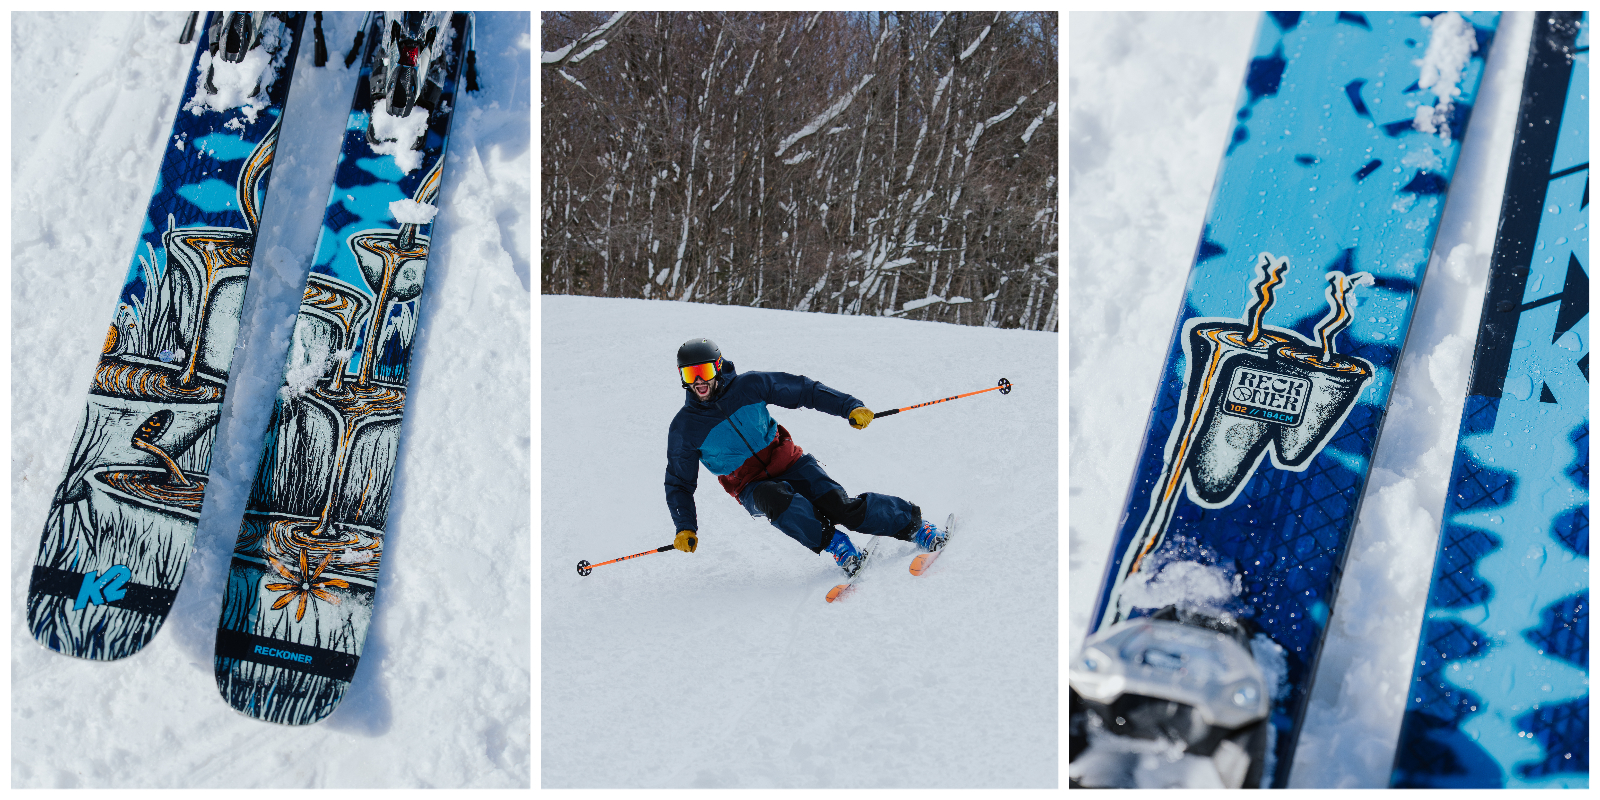 TSM, The Ski Monster, snow, winter, Sunapee Mountain, New Hampshire, K2, K2 Mindbender, K2 BOA boots, K2 skis, ski test, ski demo